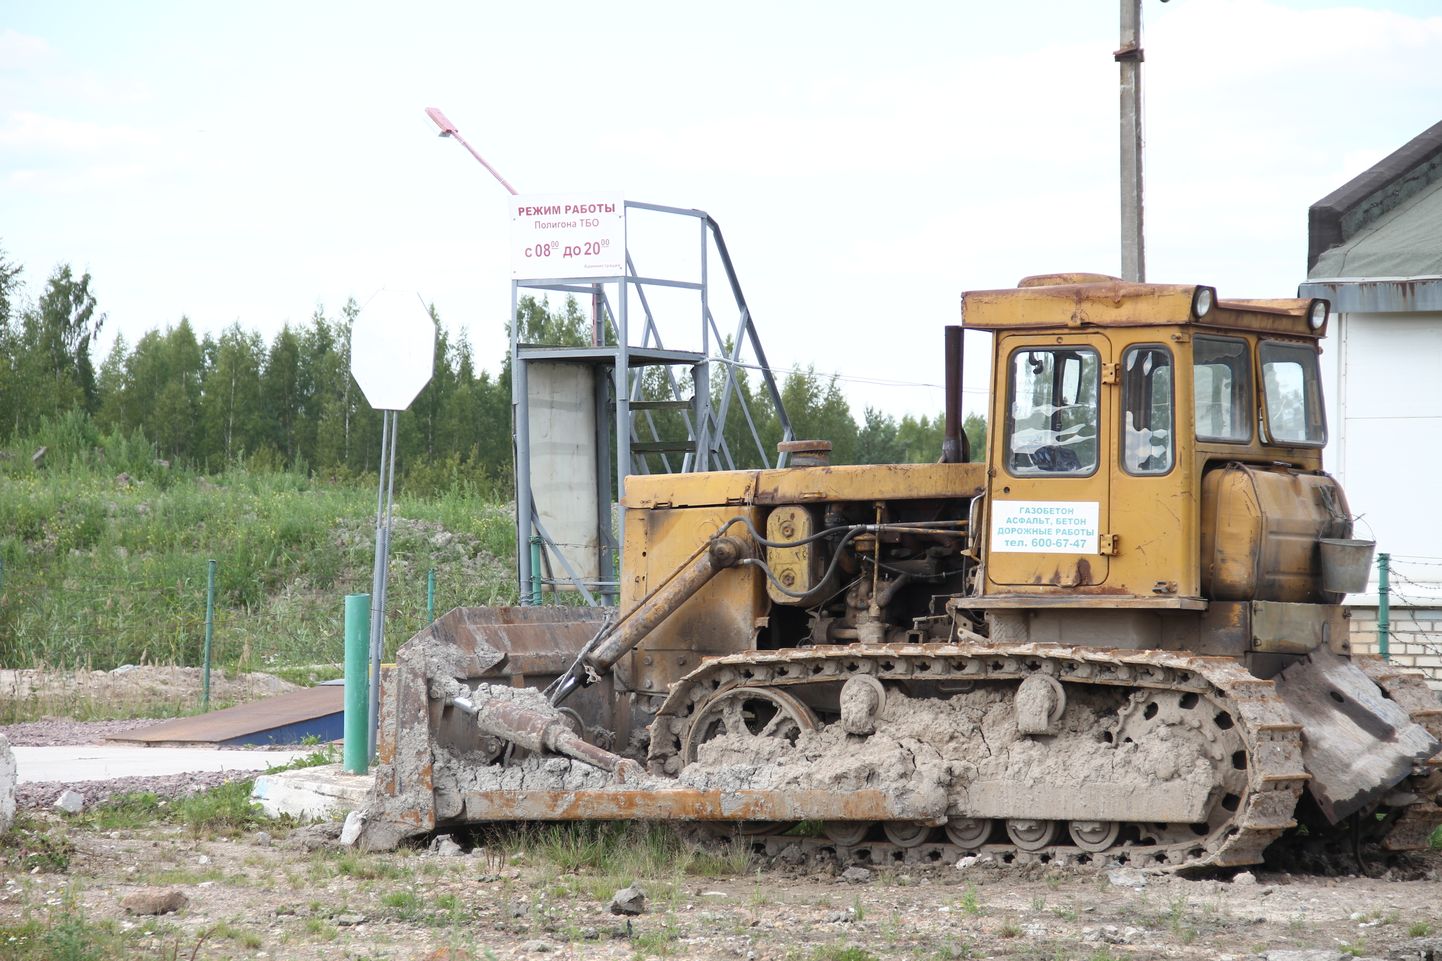 Свалка между Ивангородом и Кингисеппом: по словам руководителя, землеройные работы не связаны со строительством новой свалки.